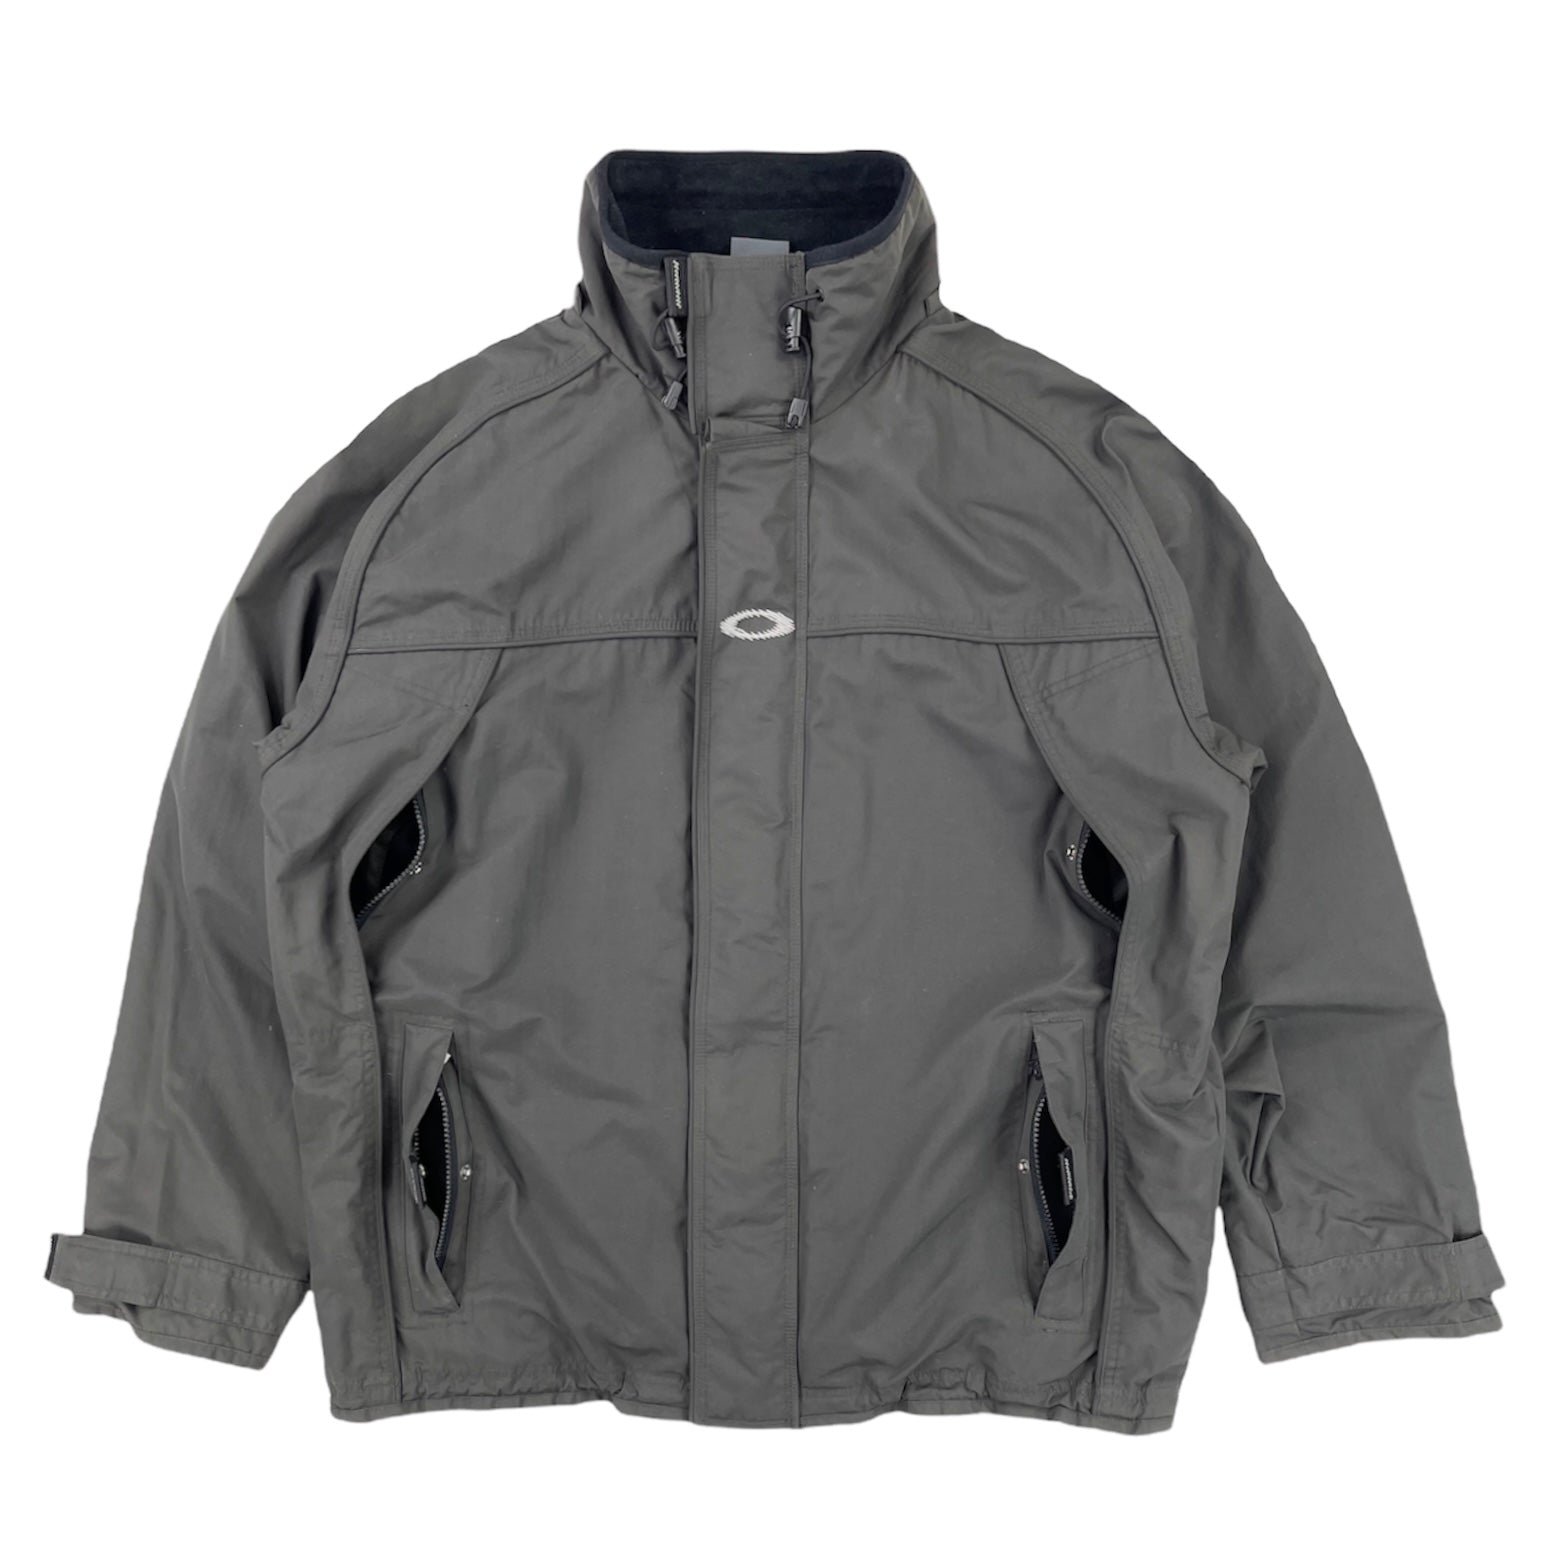 2000s Oakley software jacket